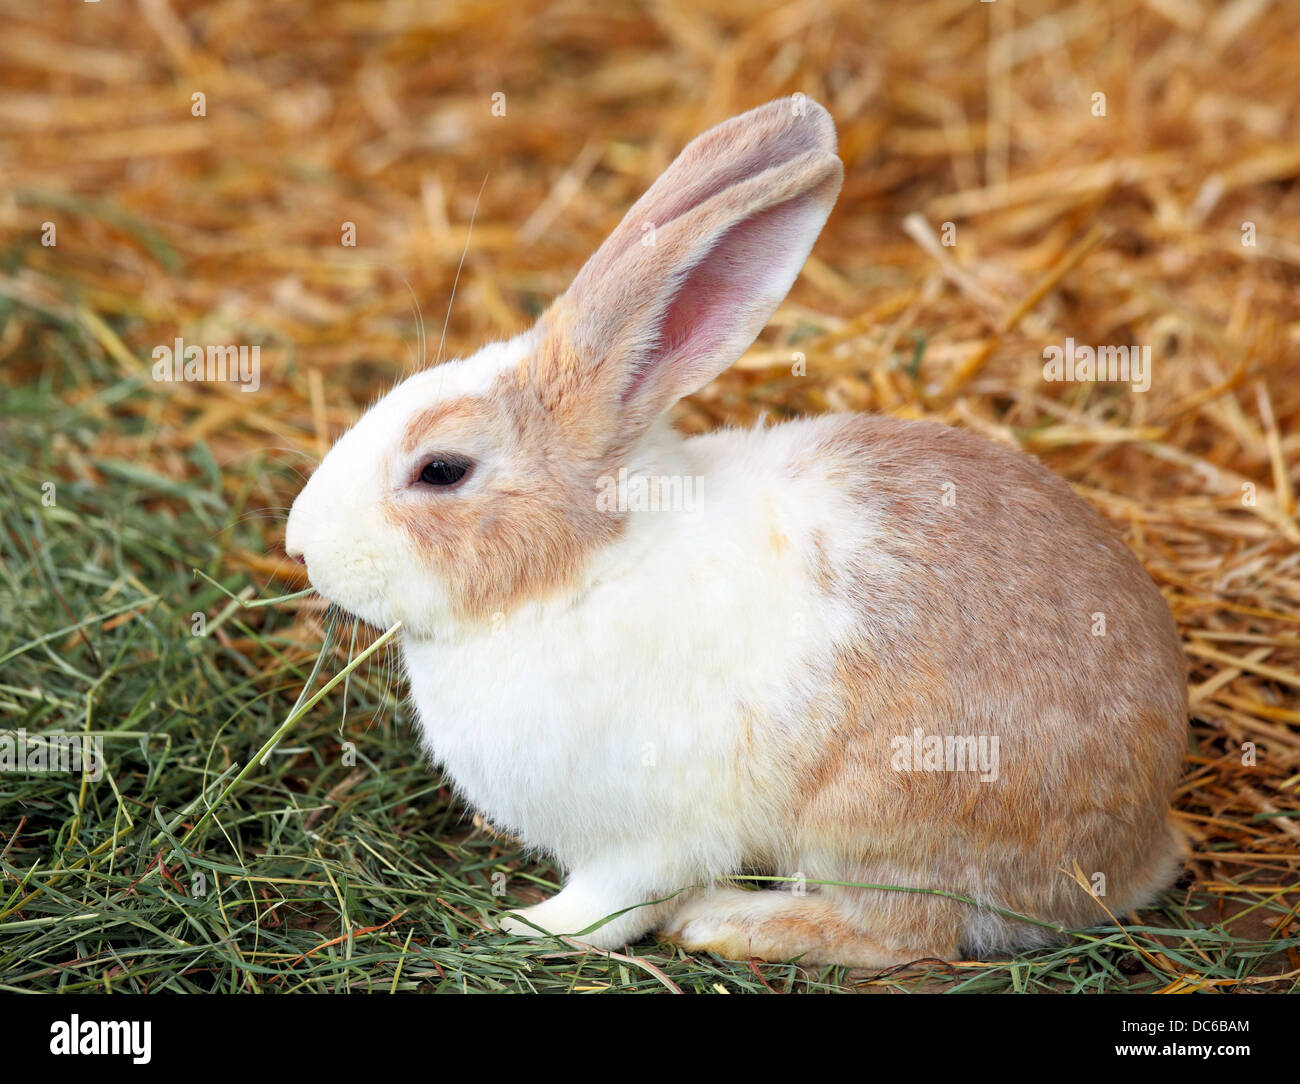 rabbit on grass Stock Photo